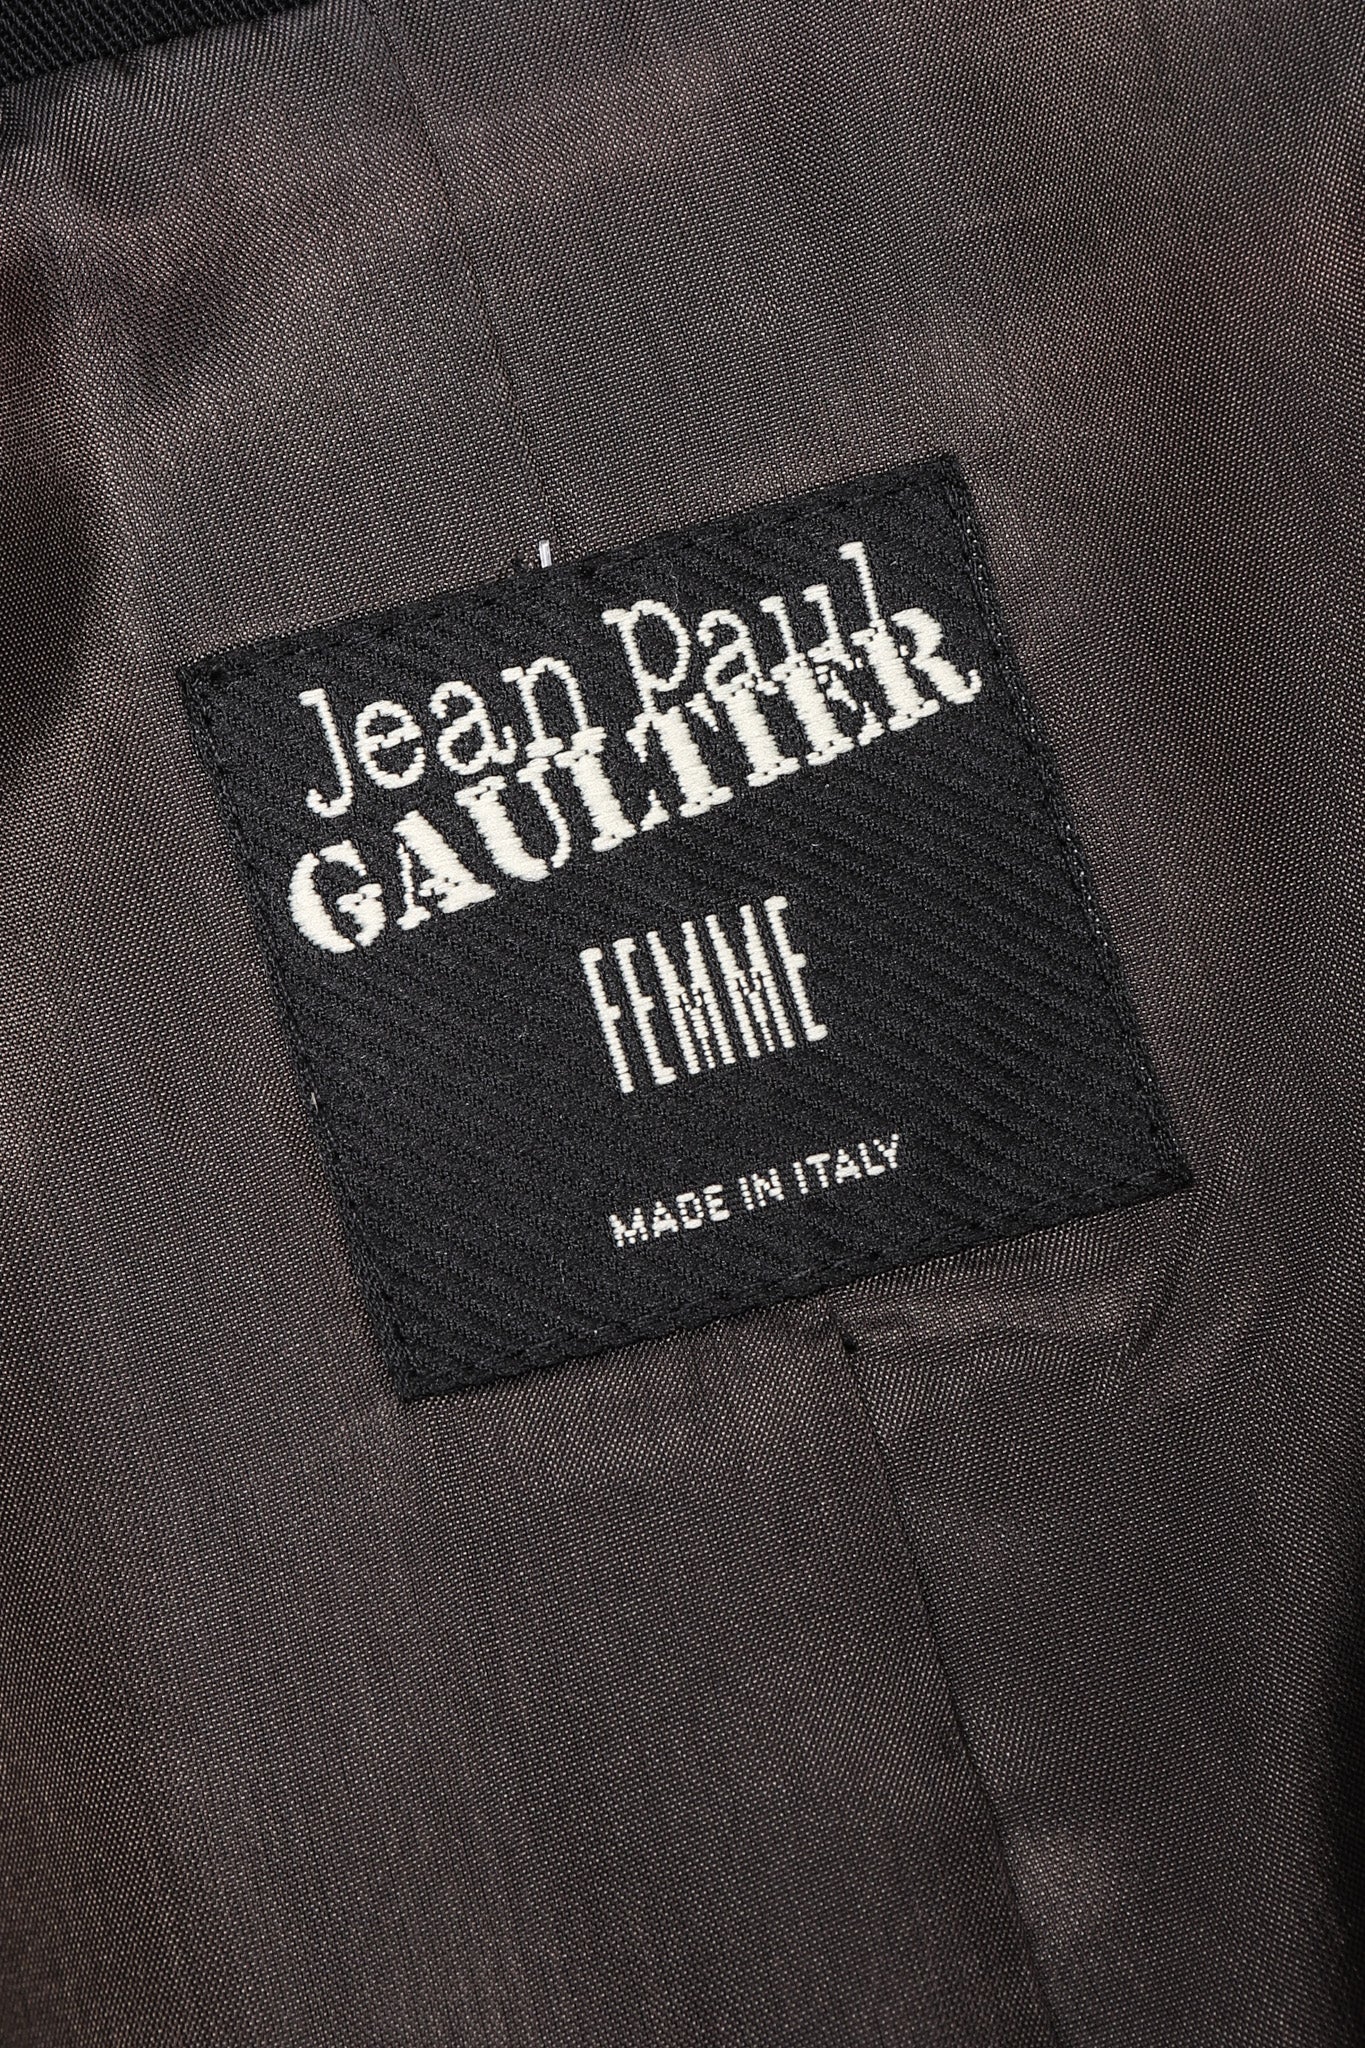 Recess Los Angeles Vintage Jean Paul Gaultier Slim Silhouette Diagonal Waist Strip Bands Black Lace Up Corset Button Fly